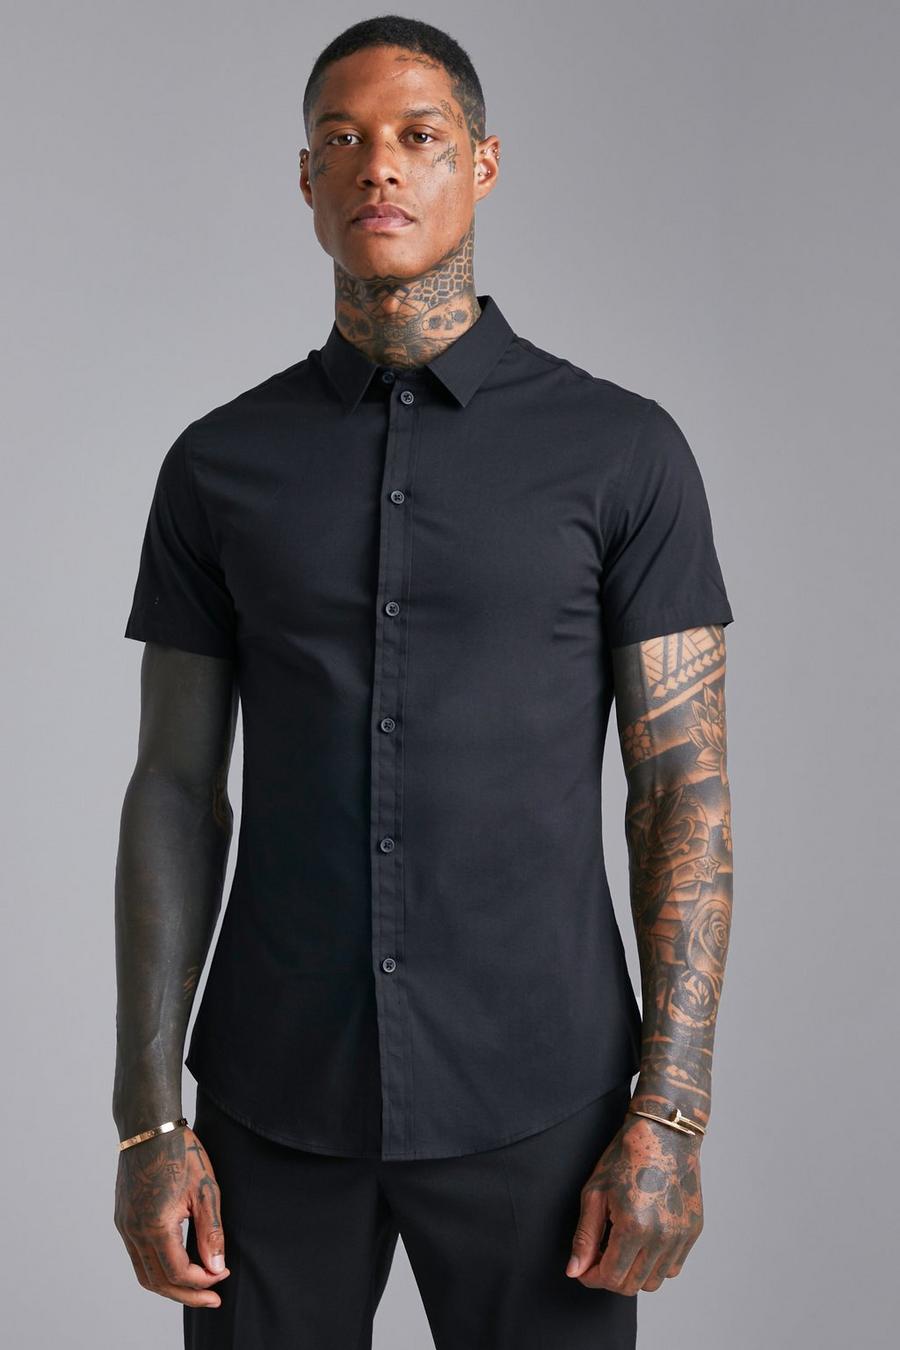 Black schwarz Short Sleeve Muscle Shirt